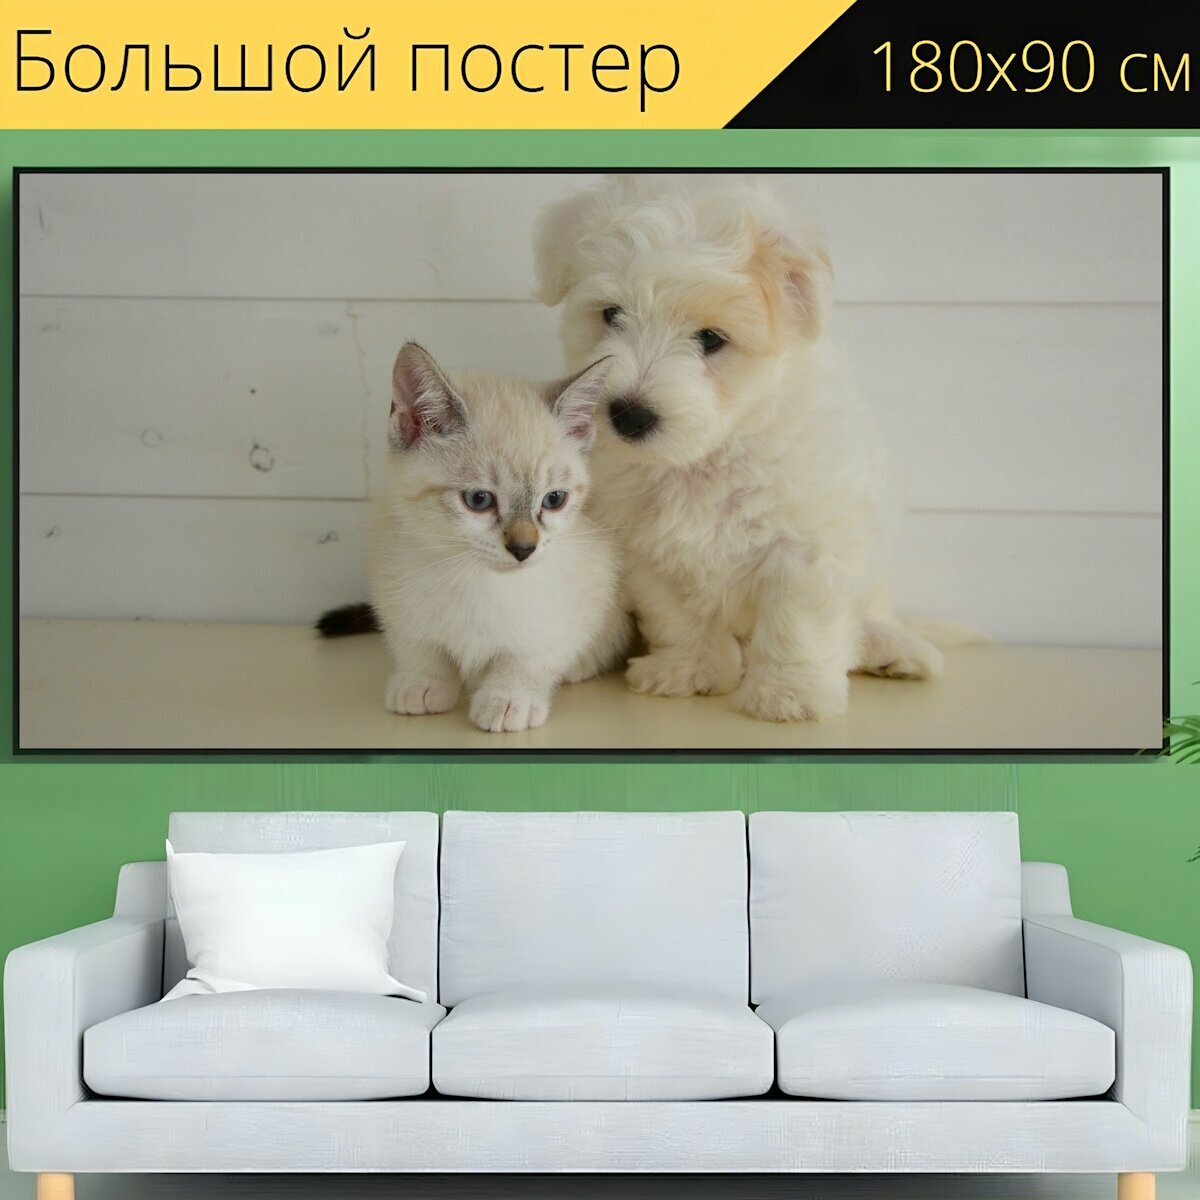 Большой постер "Собака кошка, котенок, домашнее животное" 180 x 90 см. для интерьера